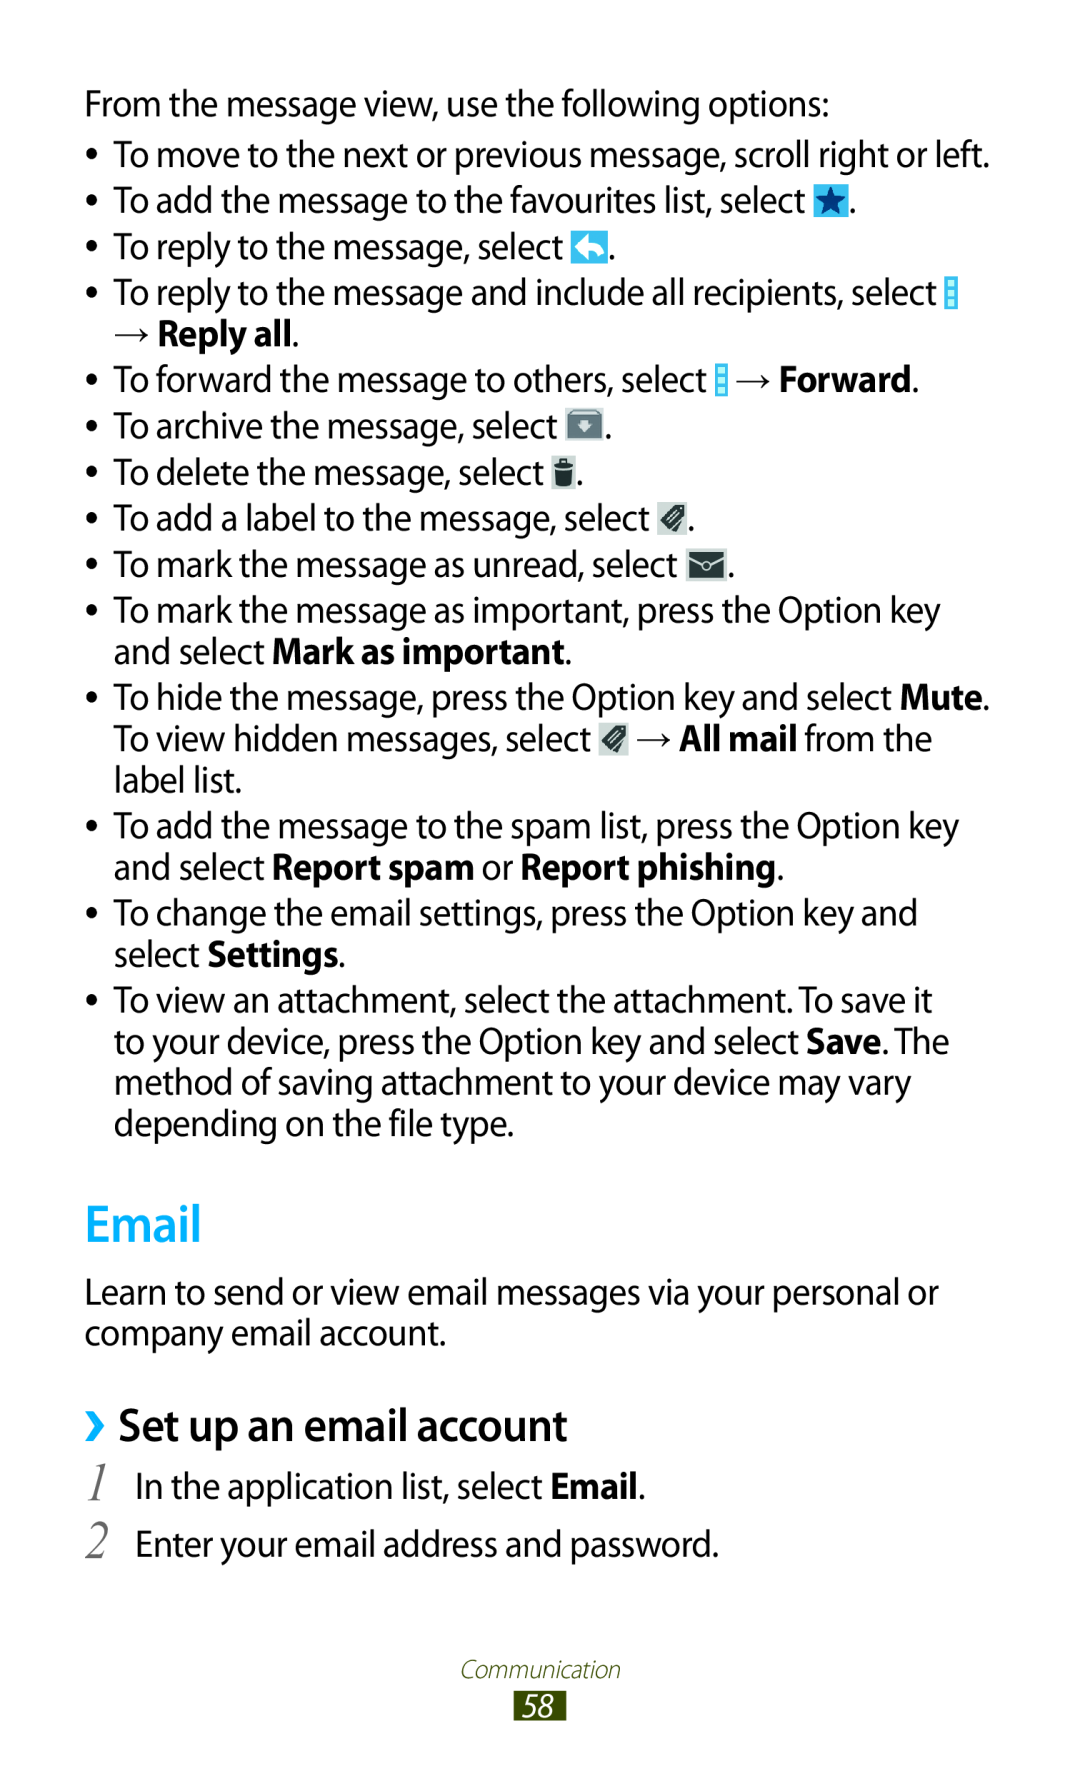 Samsung GT-S7560UWAXEO, GT-S7560ZKAVDR, GT-S7560ZKAPRT, GT-S7560UWAWIN, GT-S7560UWAVDR manual Email, ››Set up an email account 